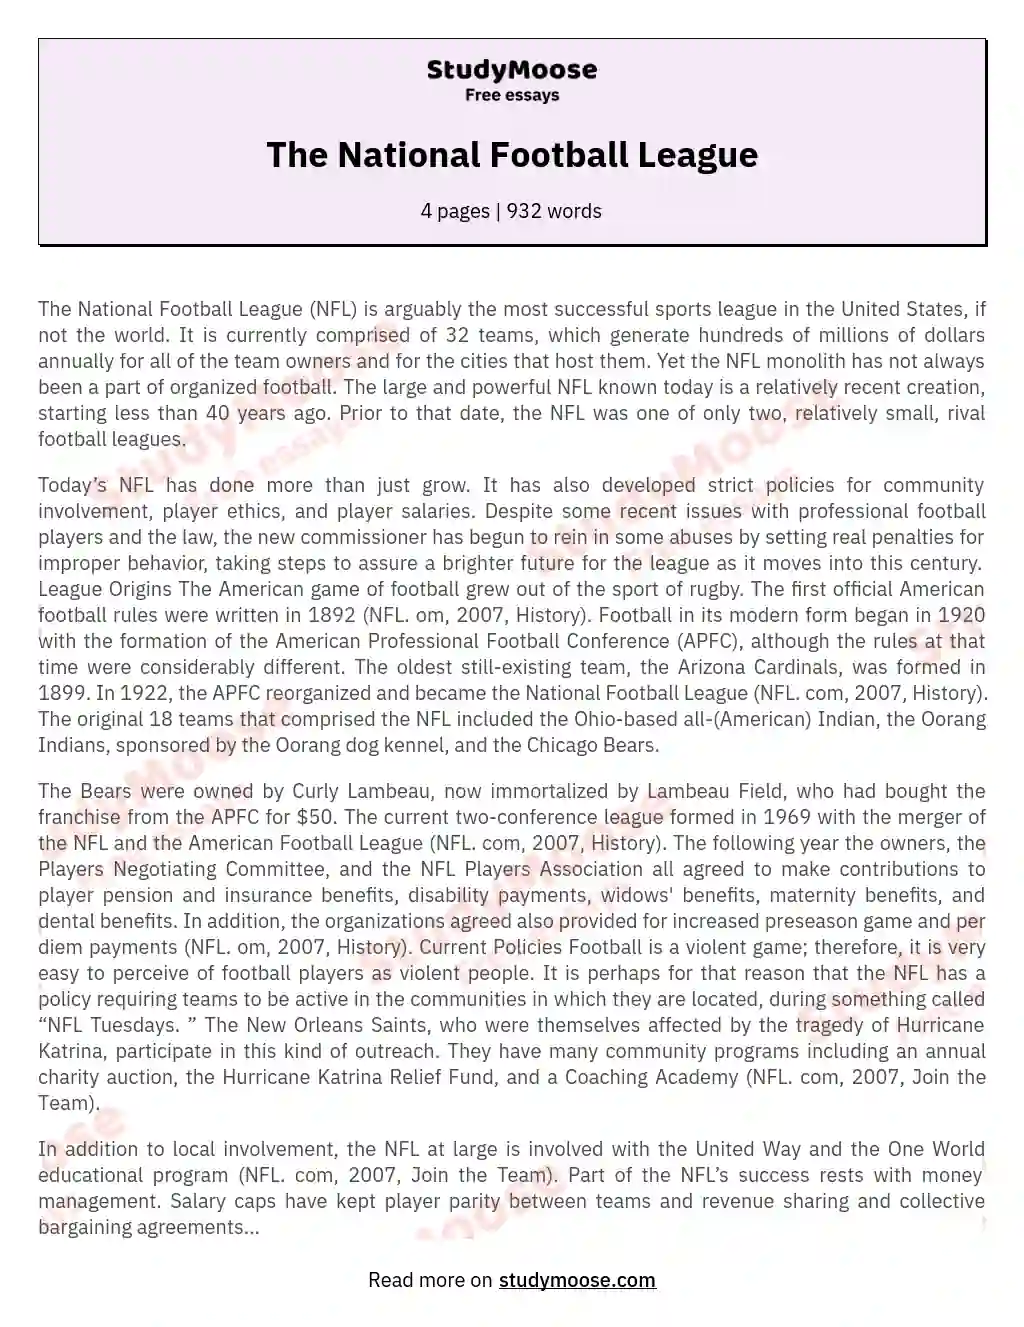 The National Football League essay